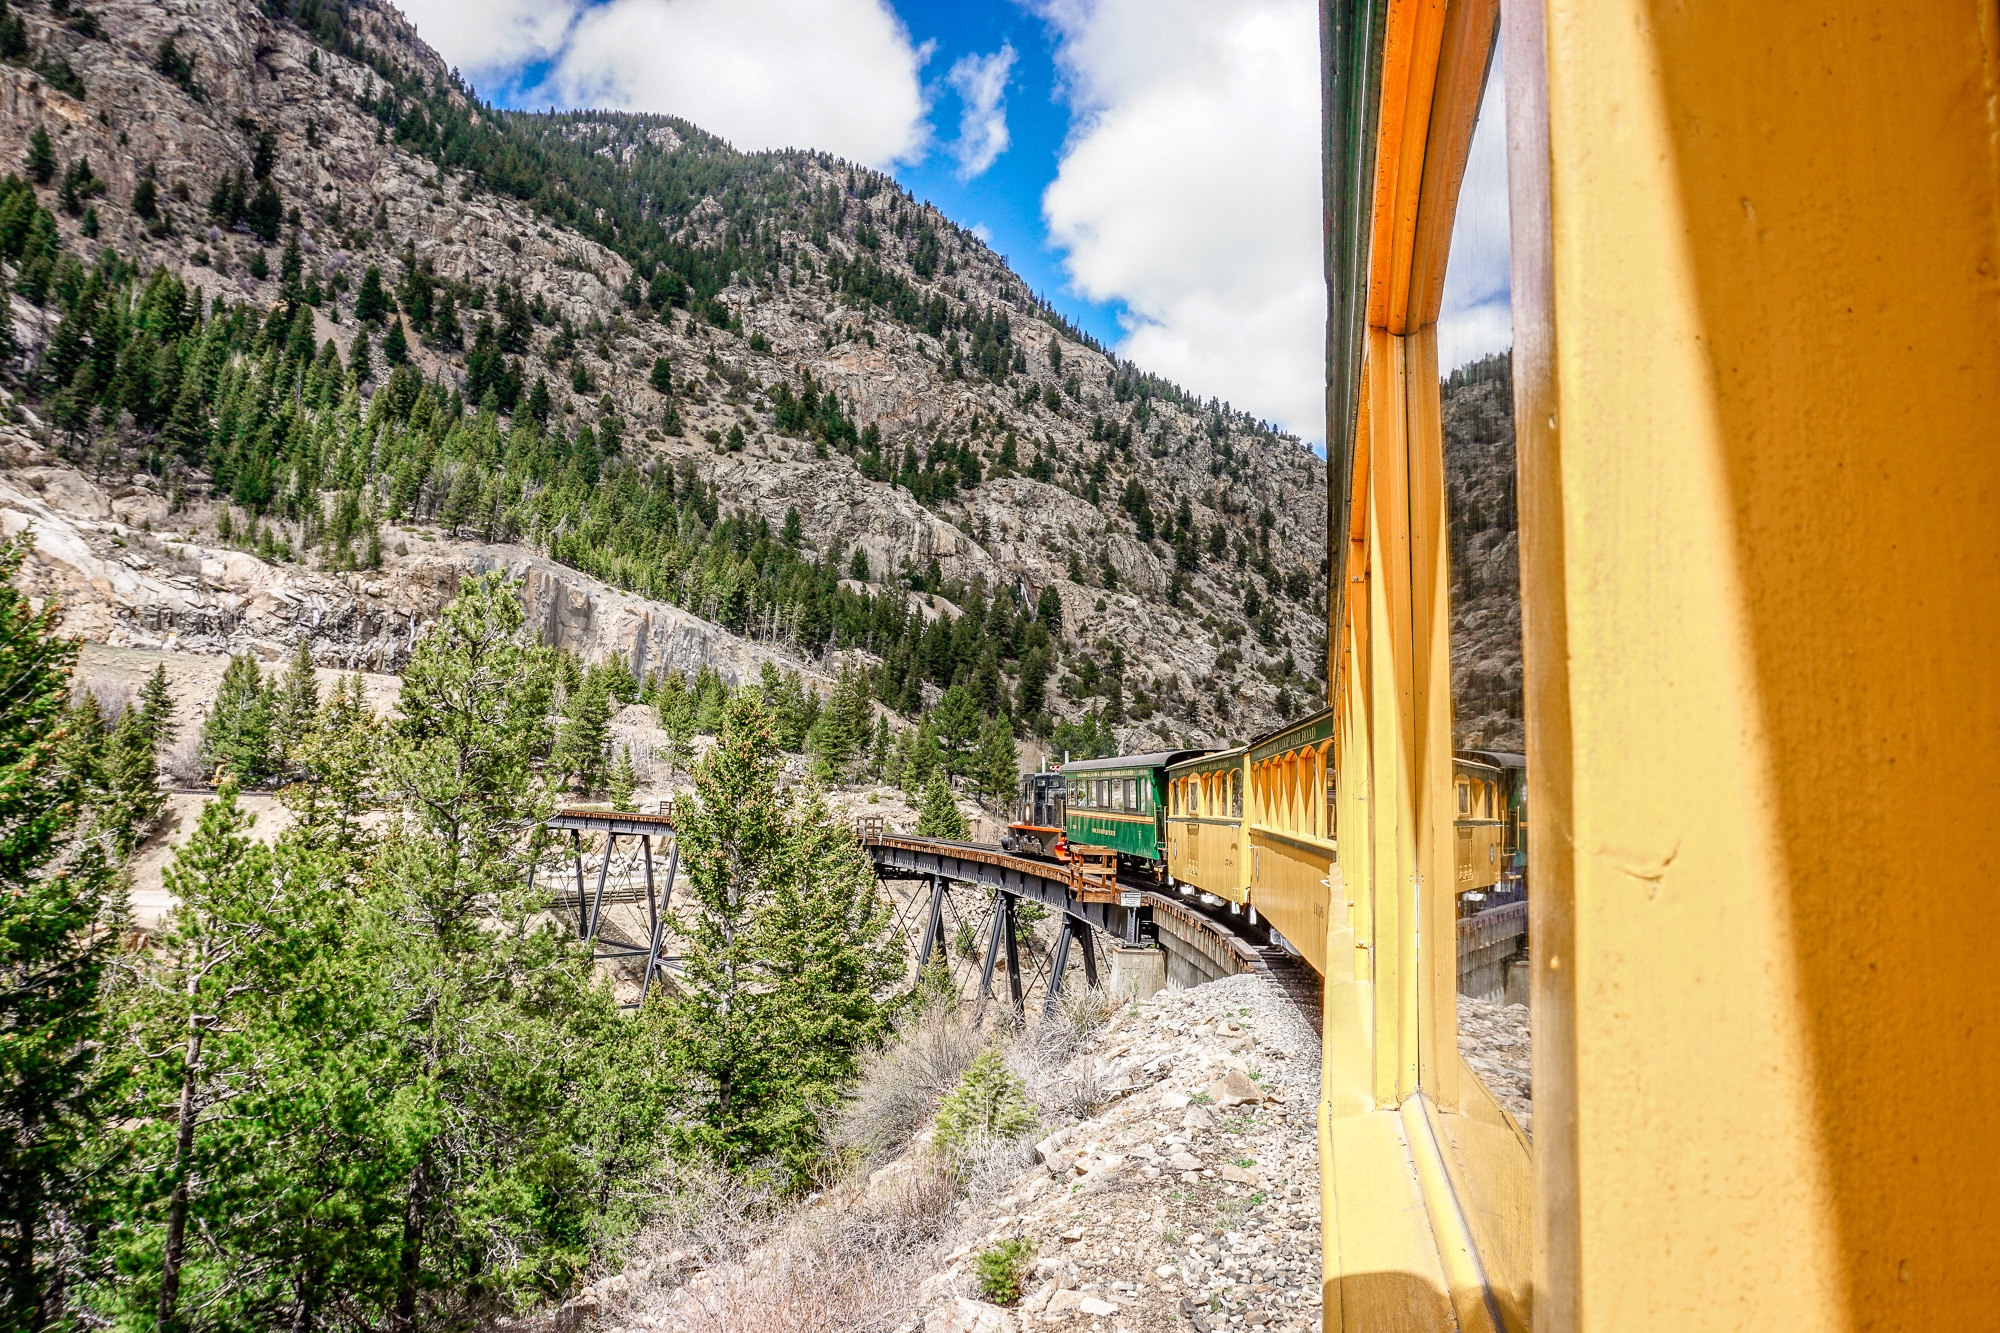 Georgetown Loop Railroad: Fahrt mit der Dampflok durch die Colorado Rocky Mountains